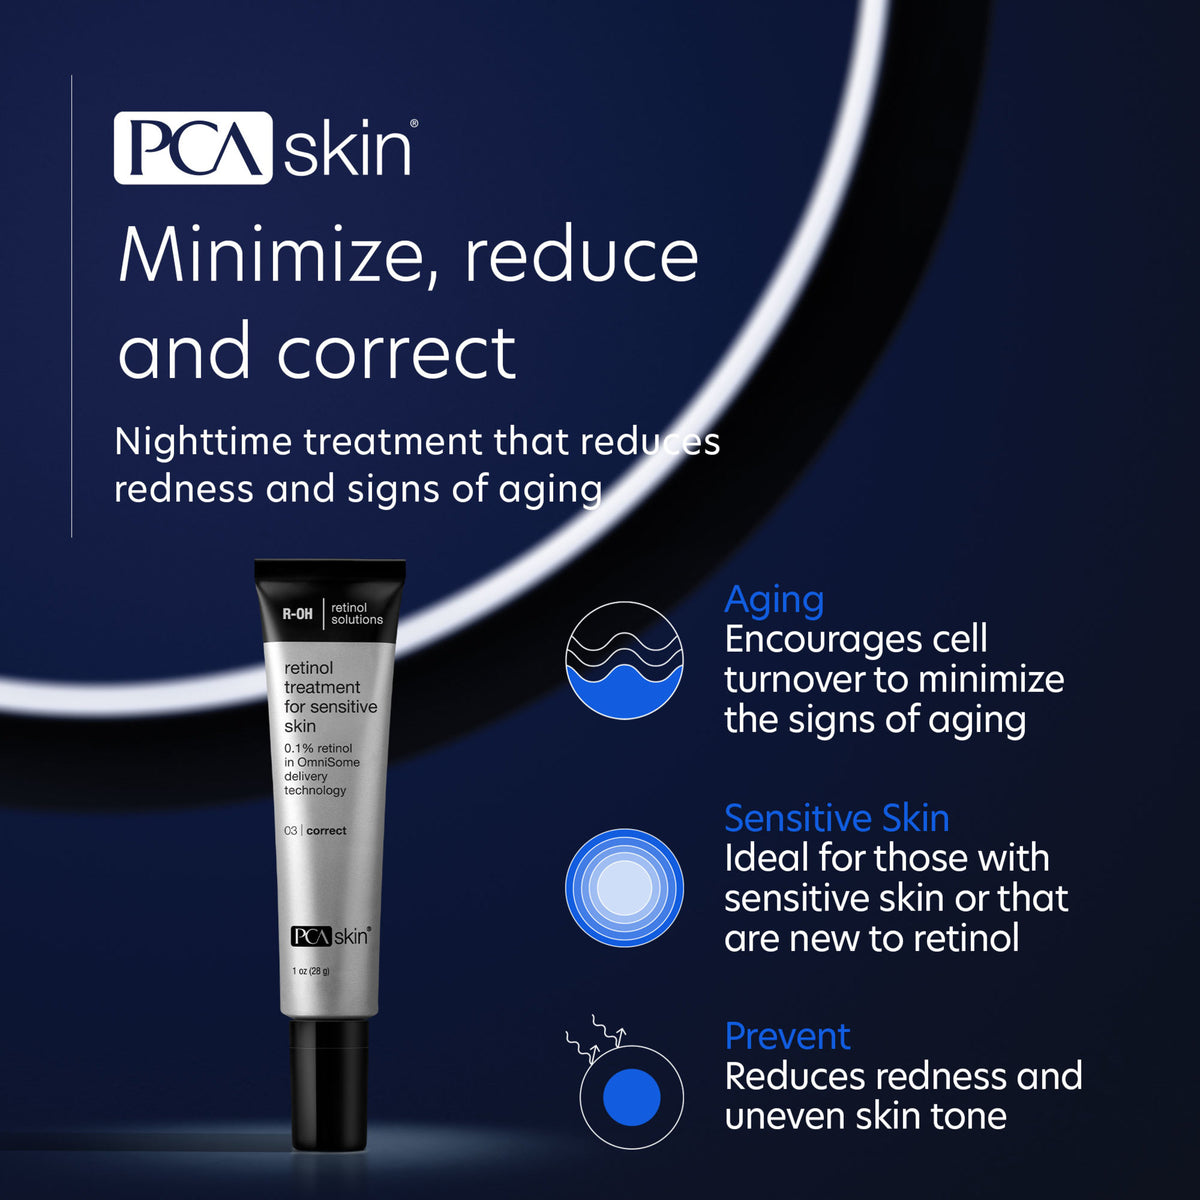 PCA Skin Retinol Treatment for Sensitive Skin .